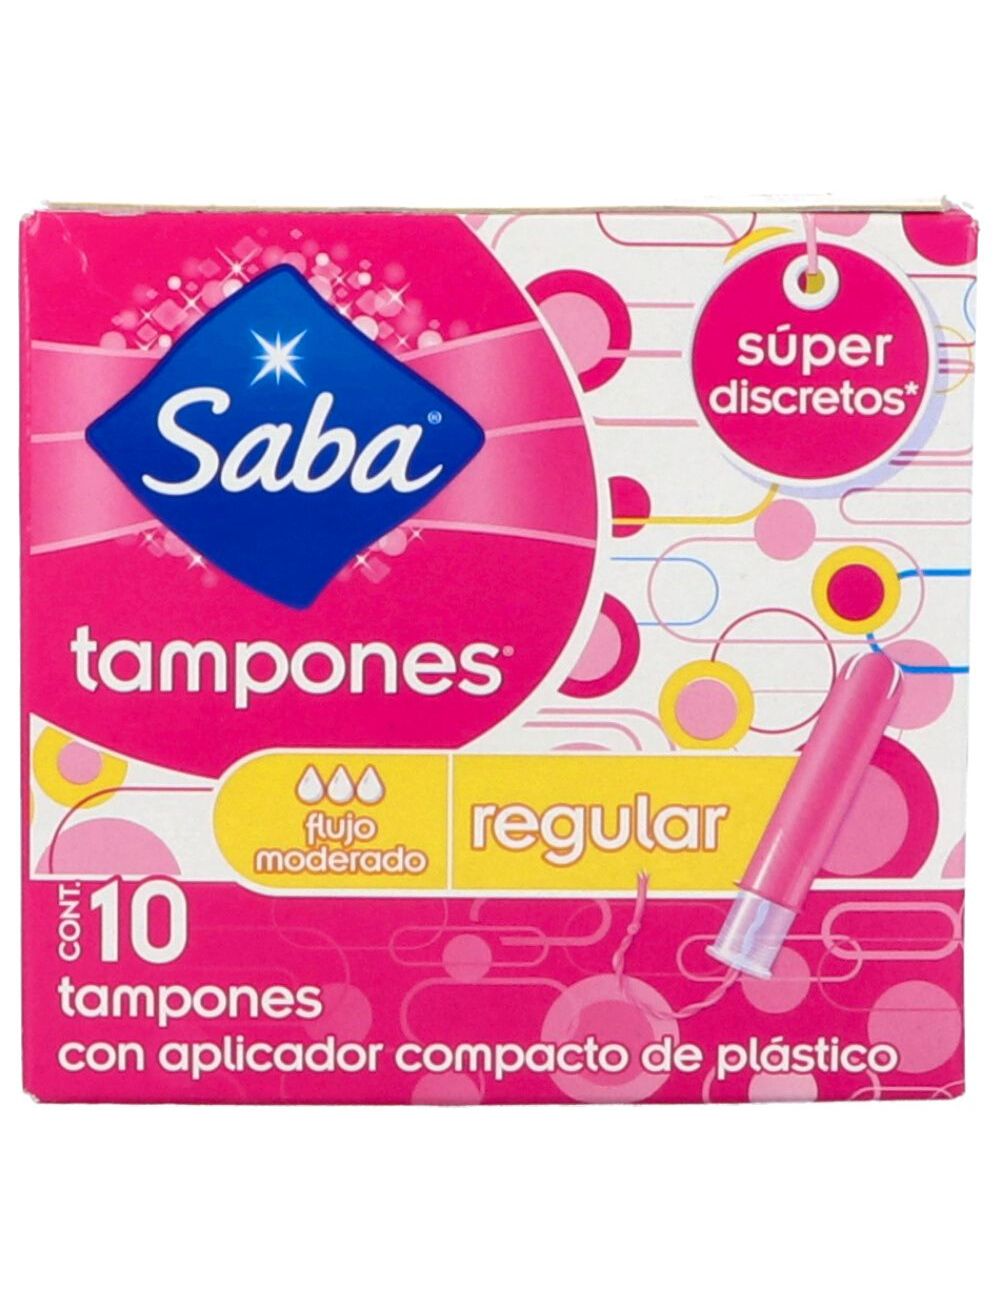 Precio Saba tampones 10 tampones | Farmalisto MX